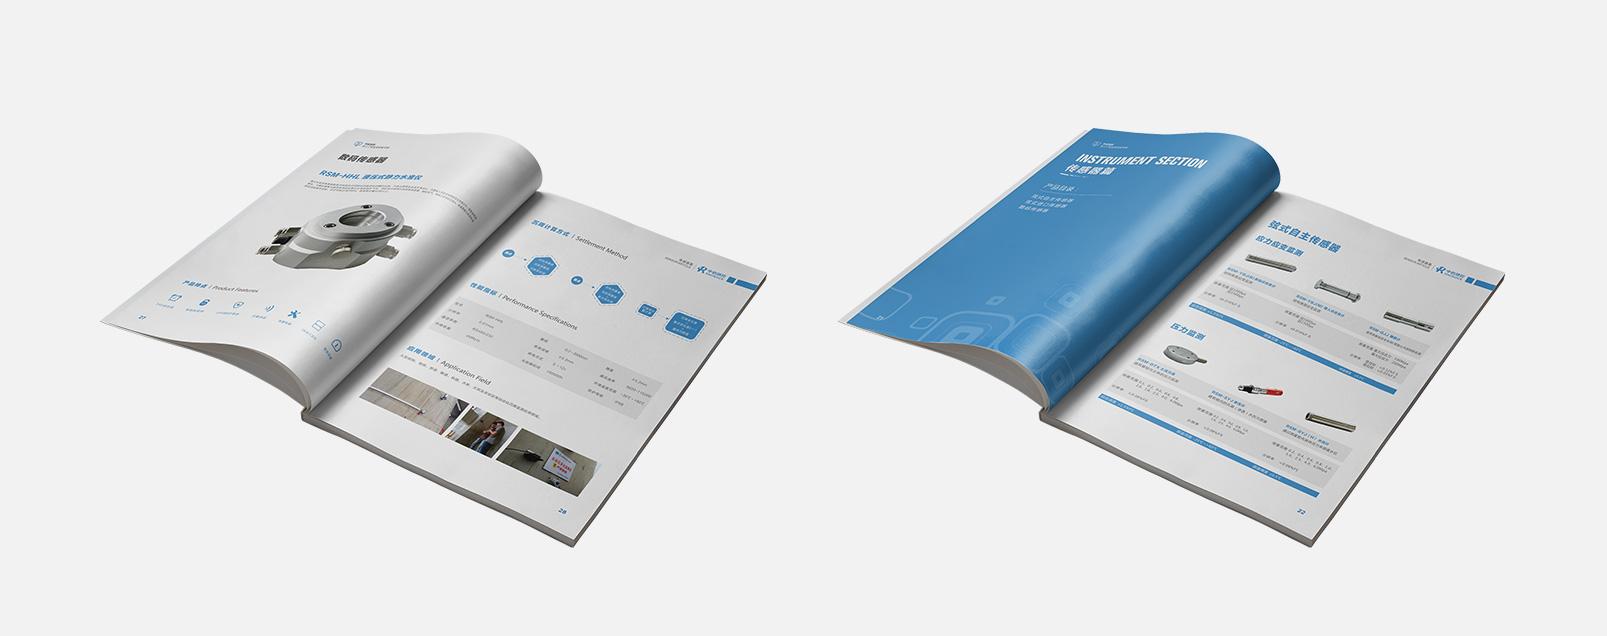 科技畫冊:科技產品畫冊設計_科技宣傳手冊設計制作案例